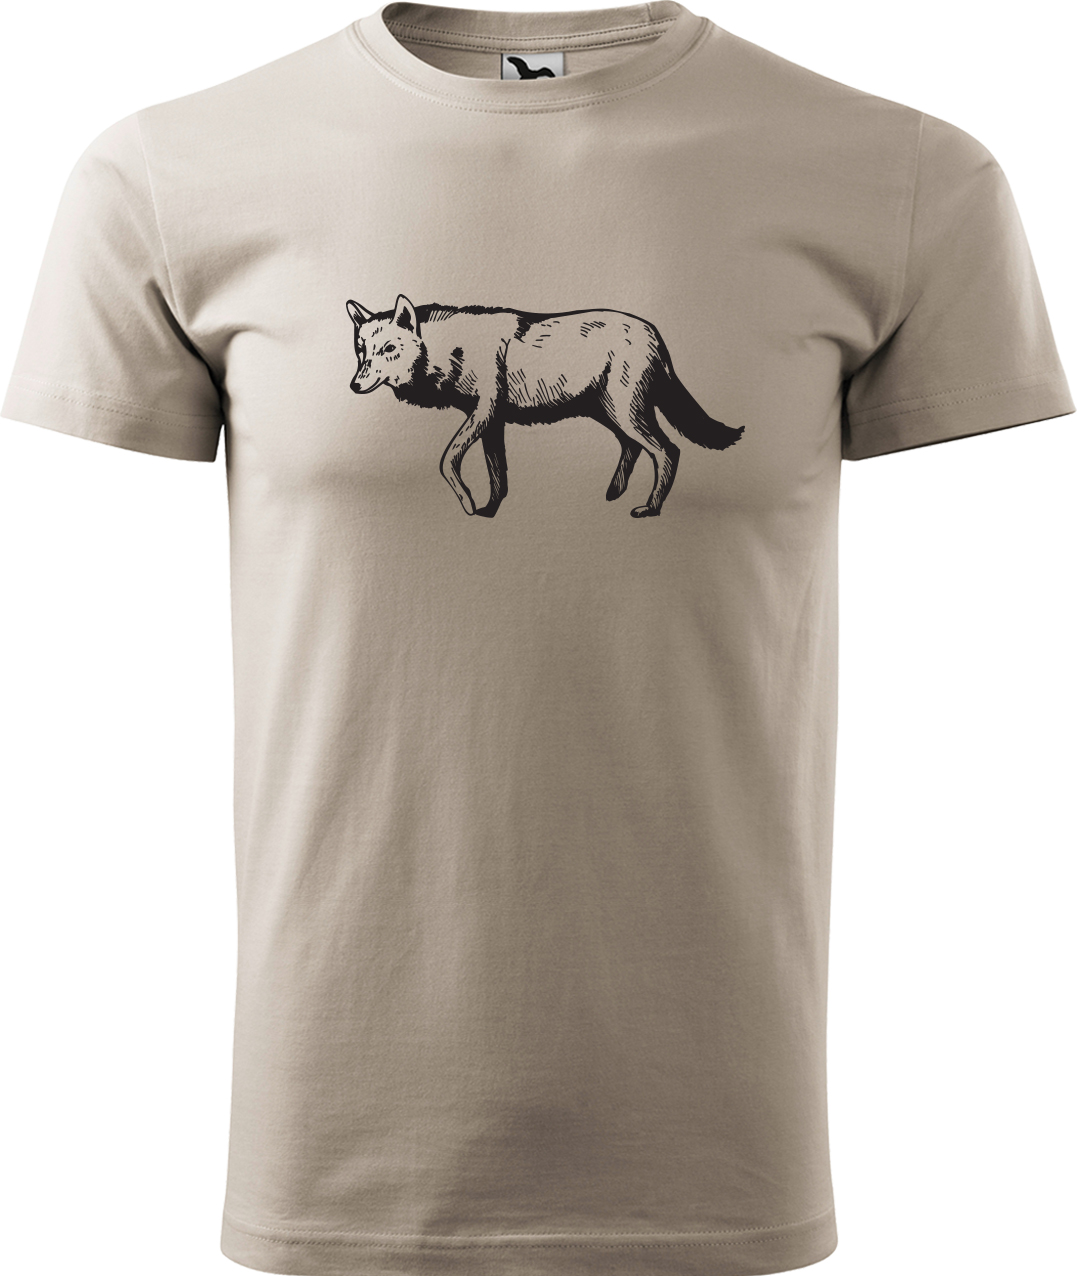 Pánské tričko s vlkem - Vlk Velikost: 4XL, Barva: Ledově šedá (51), Střih: pánský